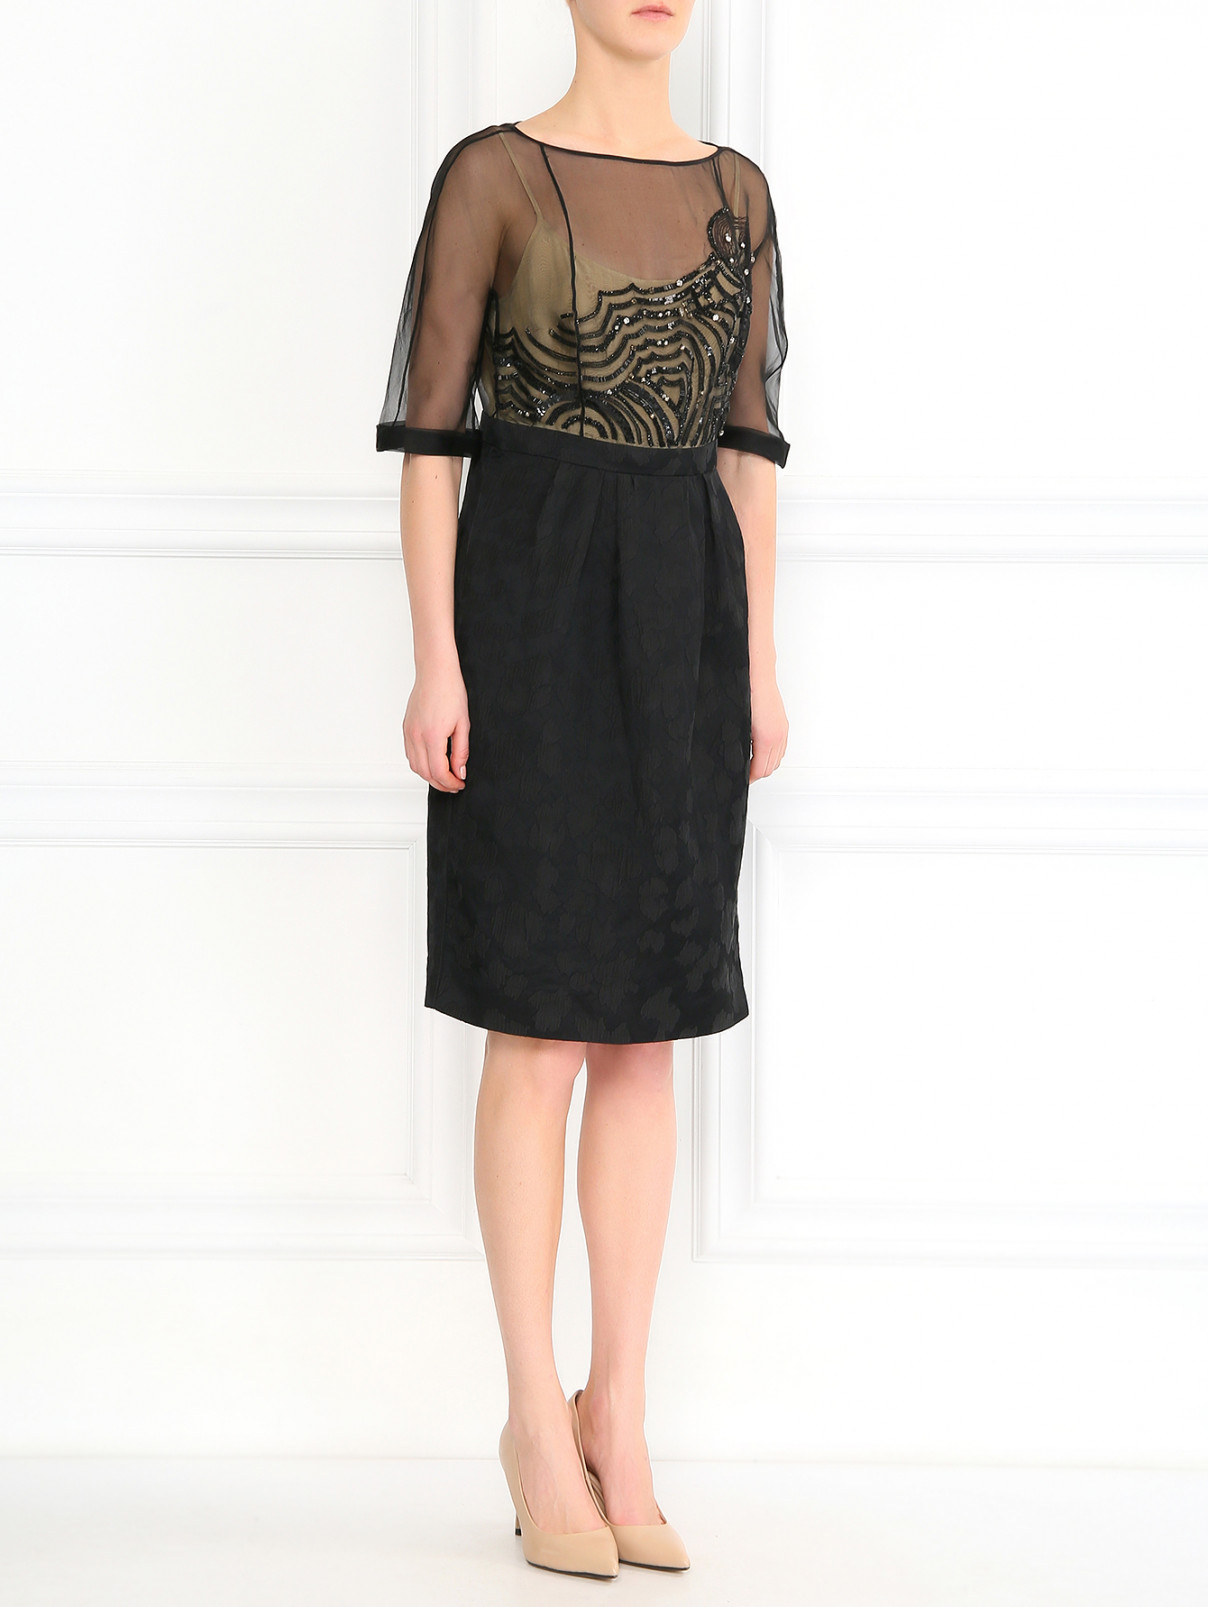 Платье из шелка с узором декорированное бисером Antonio Marras  –  Модель Общий вид  – Цвет:  Черный